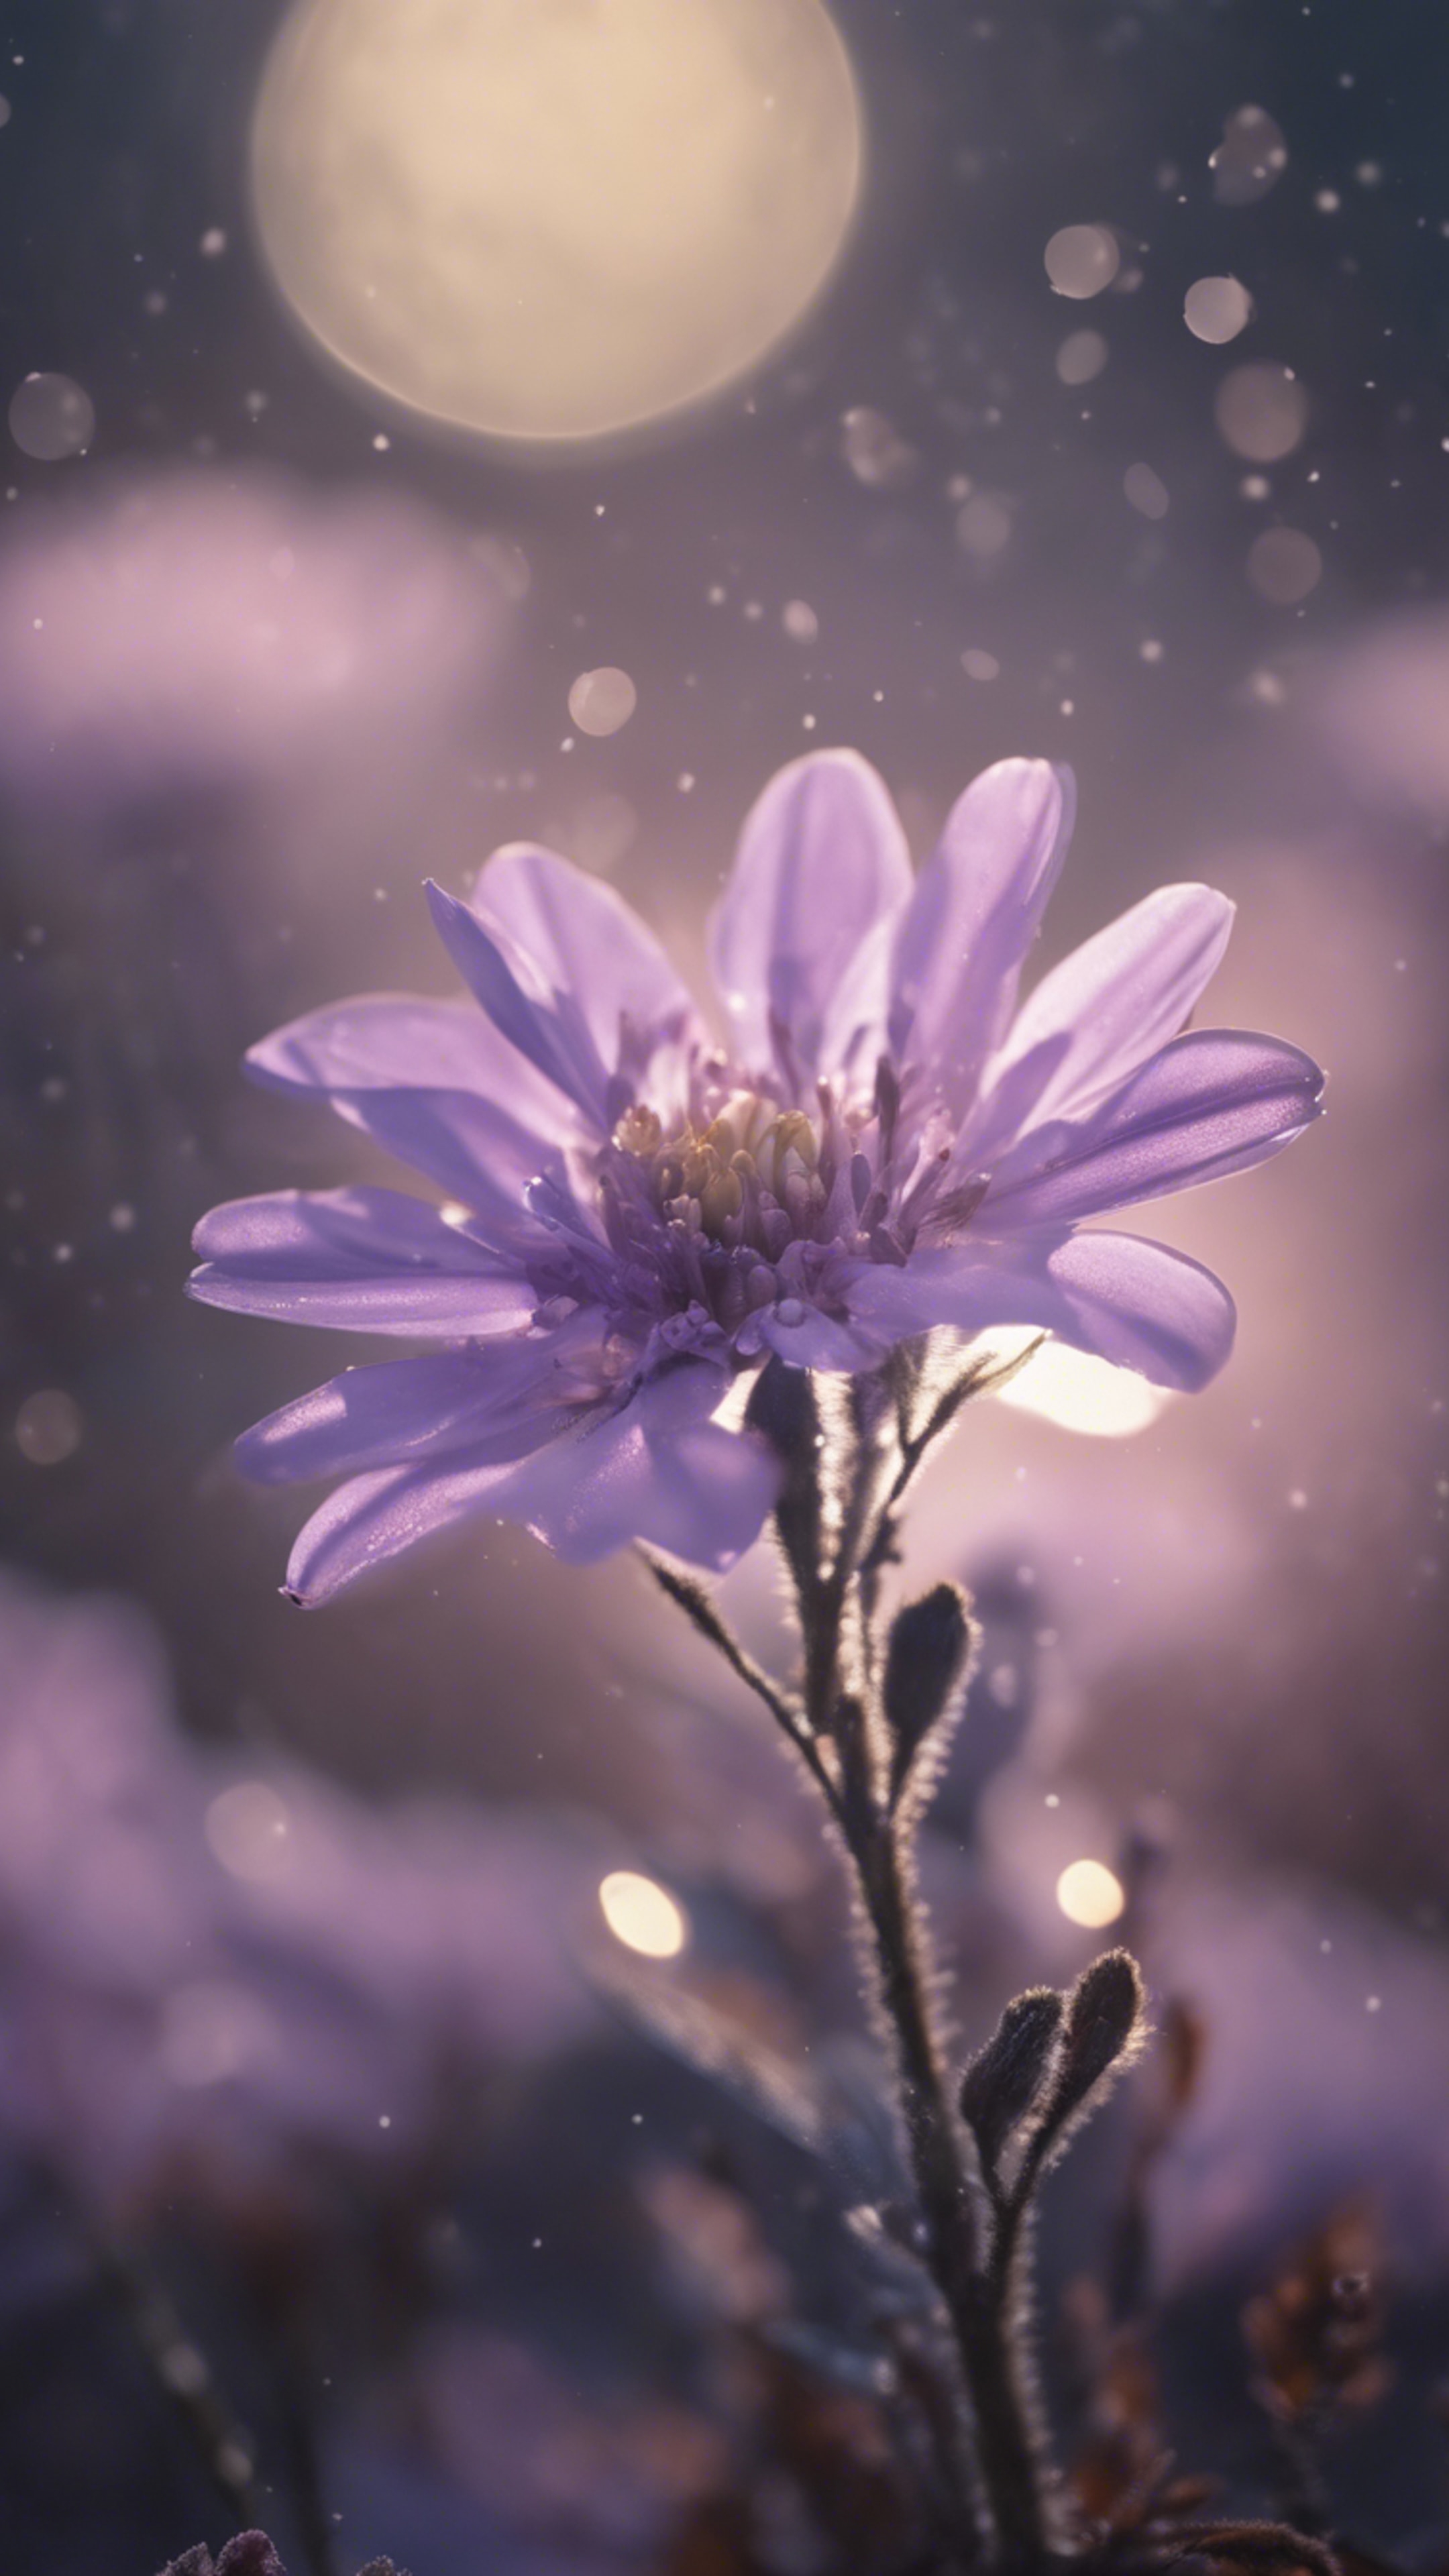 A light purple flower blooms under the soft glow of moonlight. Papel de parede[d3ee88b9afa845898b5b]